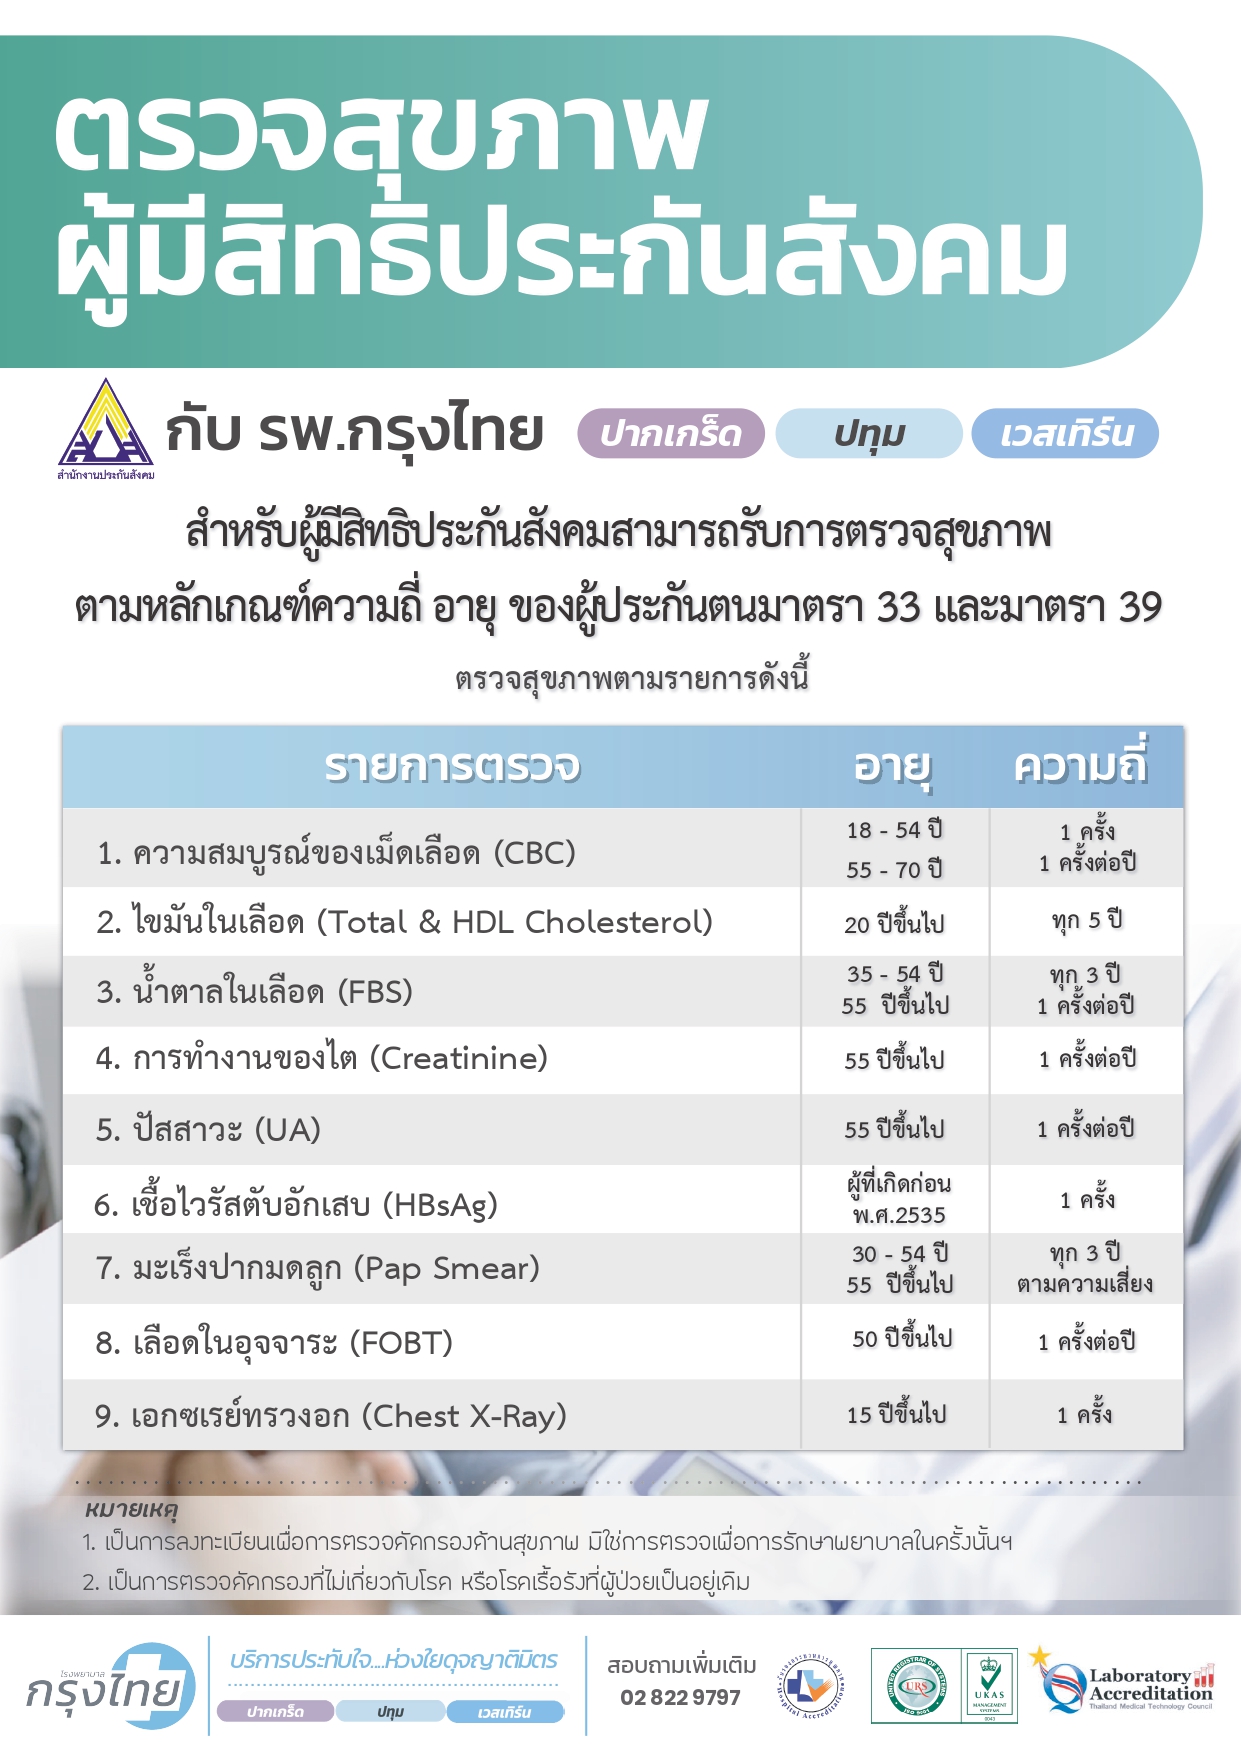 ตรวจสุขภาพผู้มีสิทธิประกันสังคม 2566 รพ.กรุงไทย